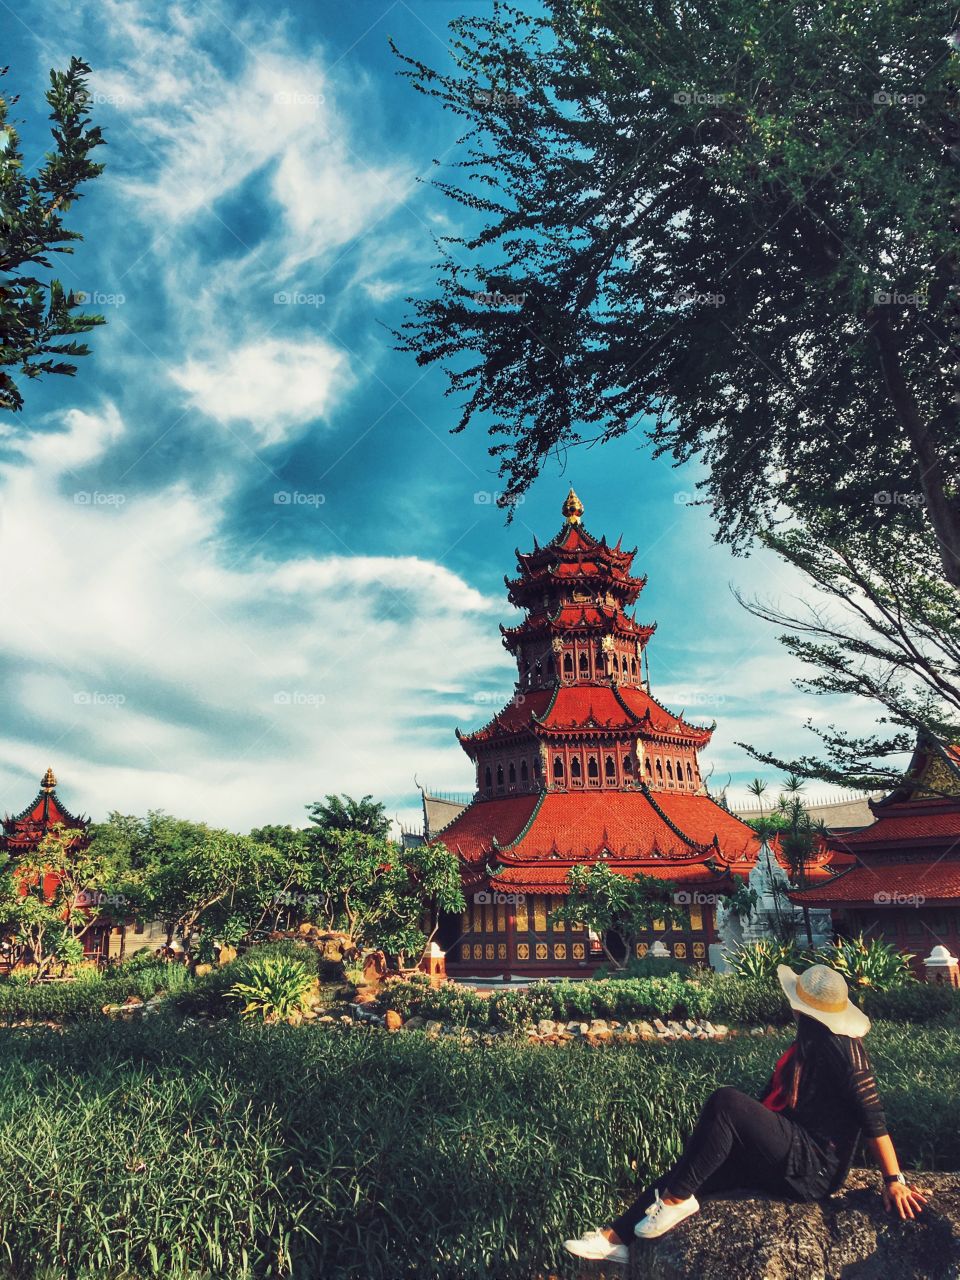 Temple, Pagoda, Buddha, Religion, Tree